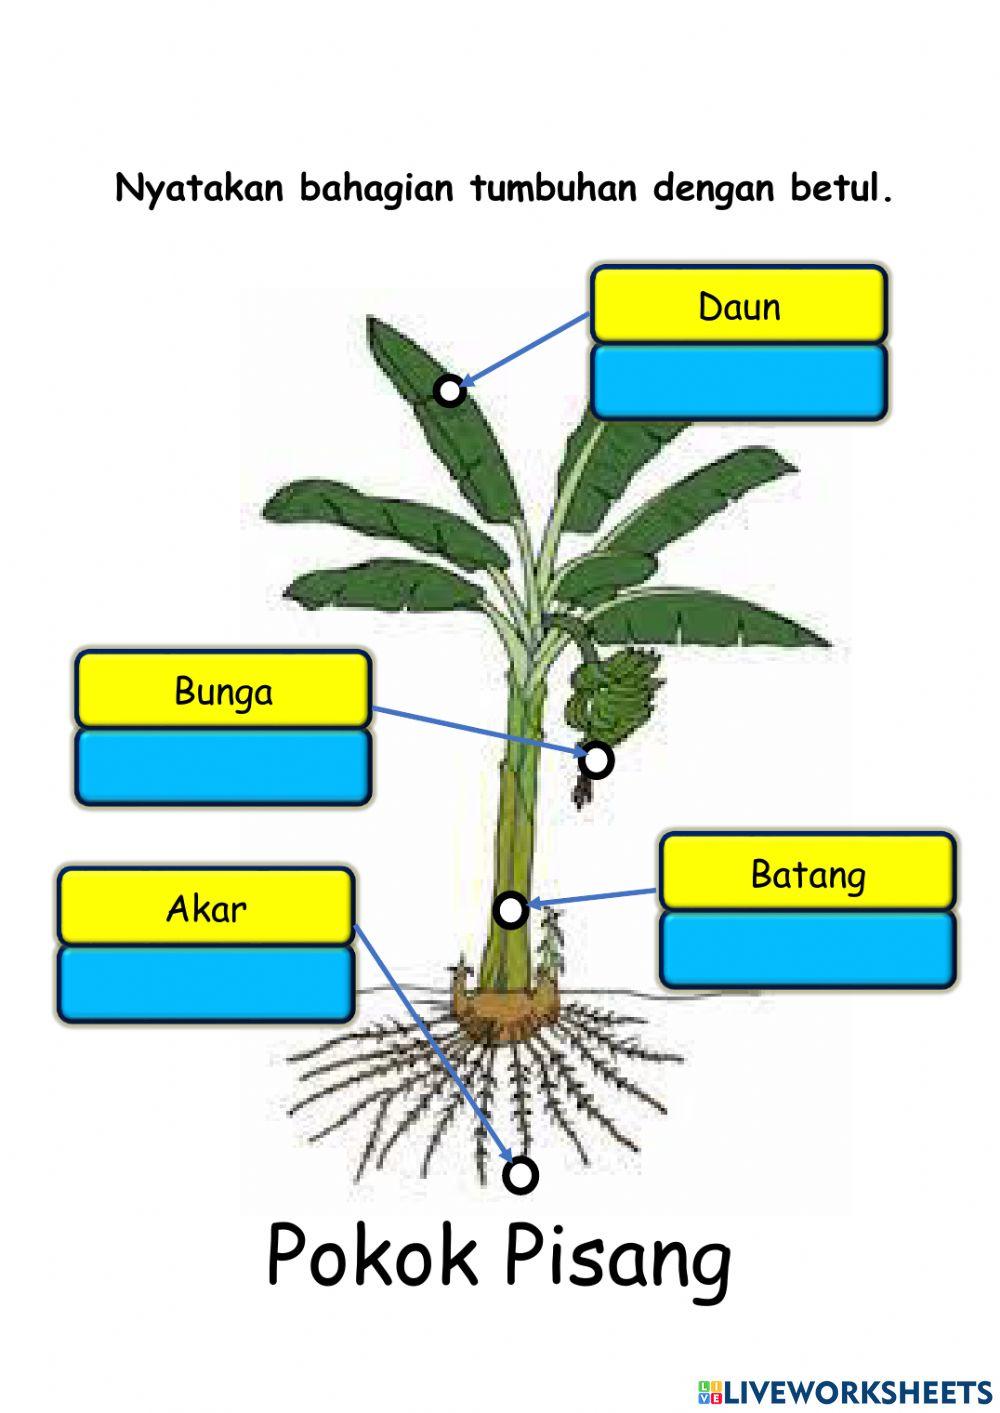 Bahagian tumbuhan